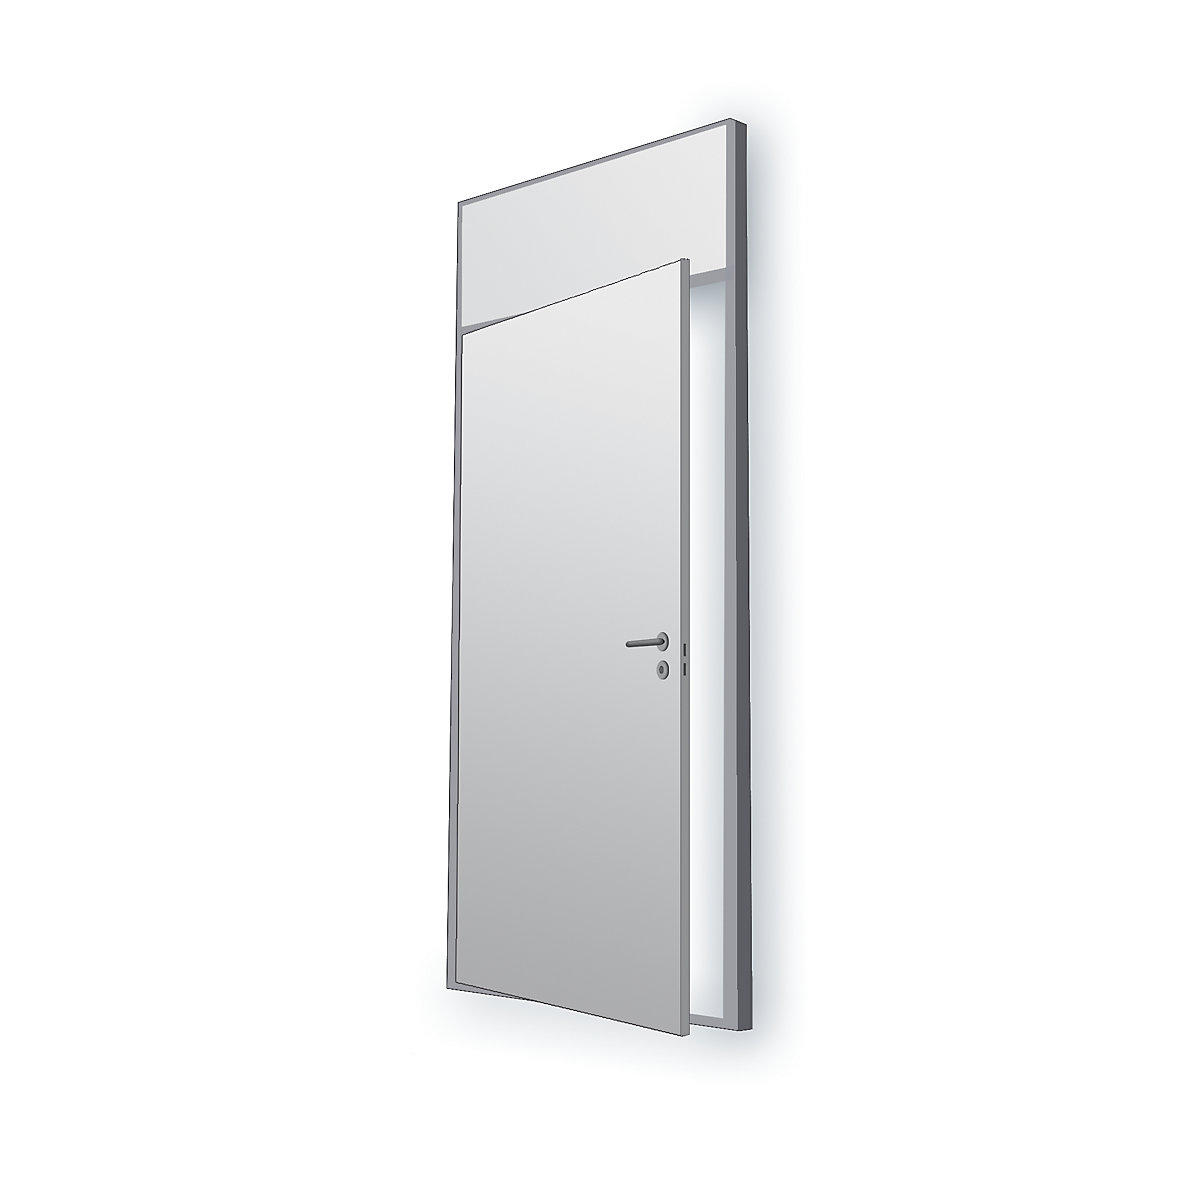 Systém dělicích stěn, flexibilní, tloušťka stěny 82 mm, prvek jednoduchých dveří, v x š 2093 x 936 mm, bez výřezu pro sklo